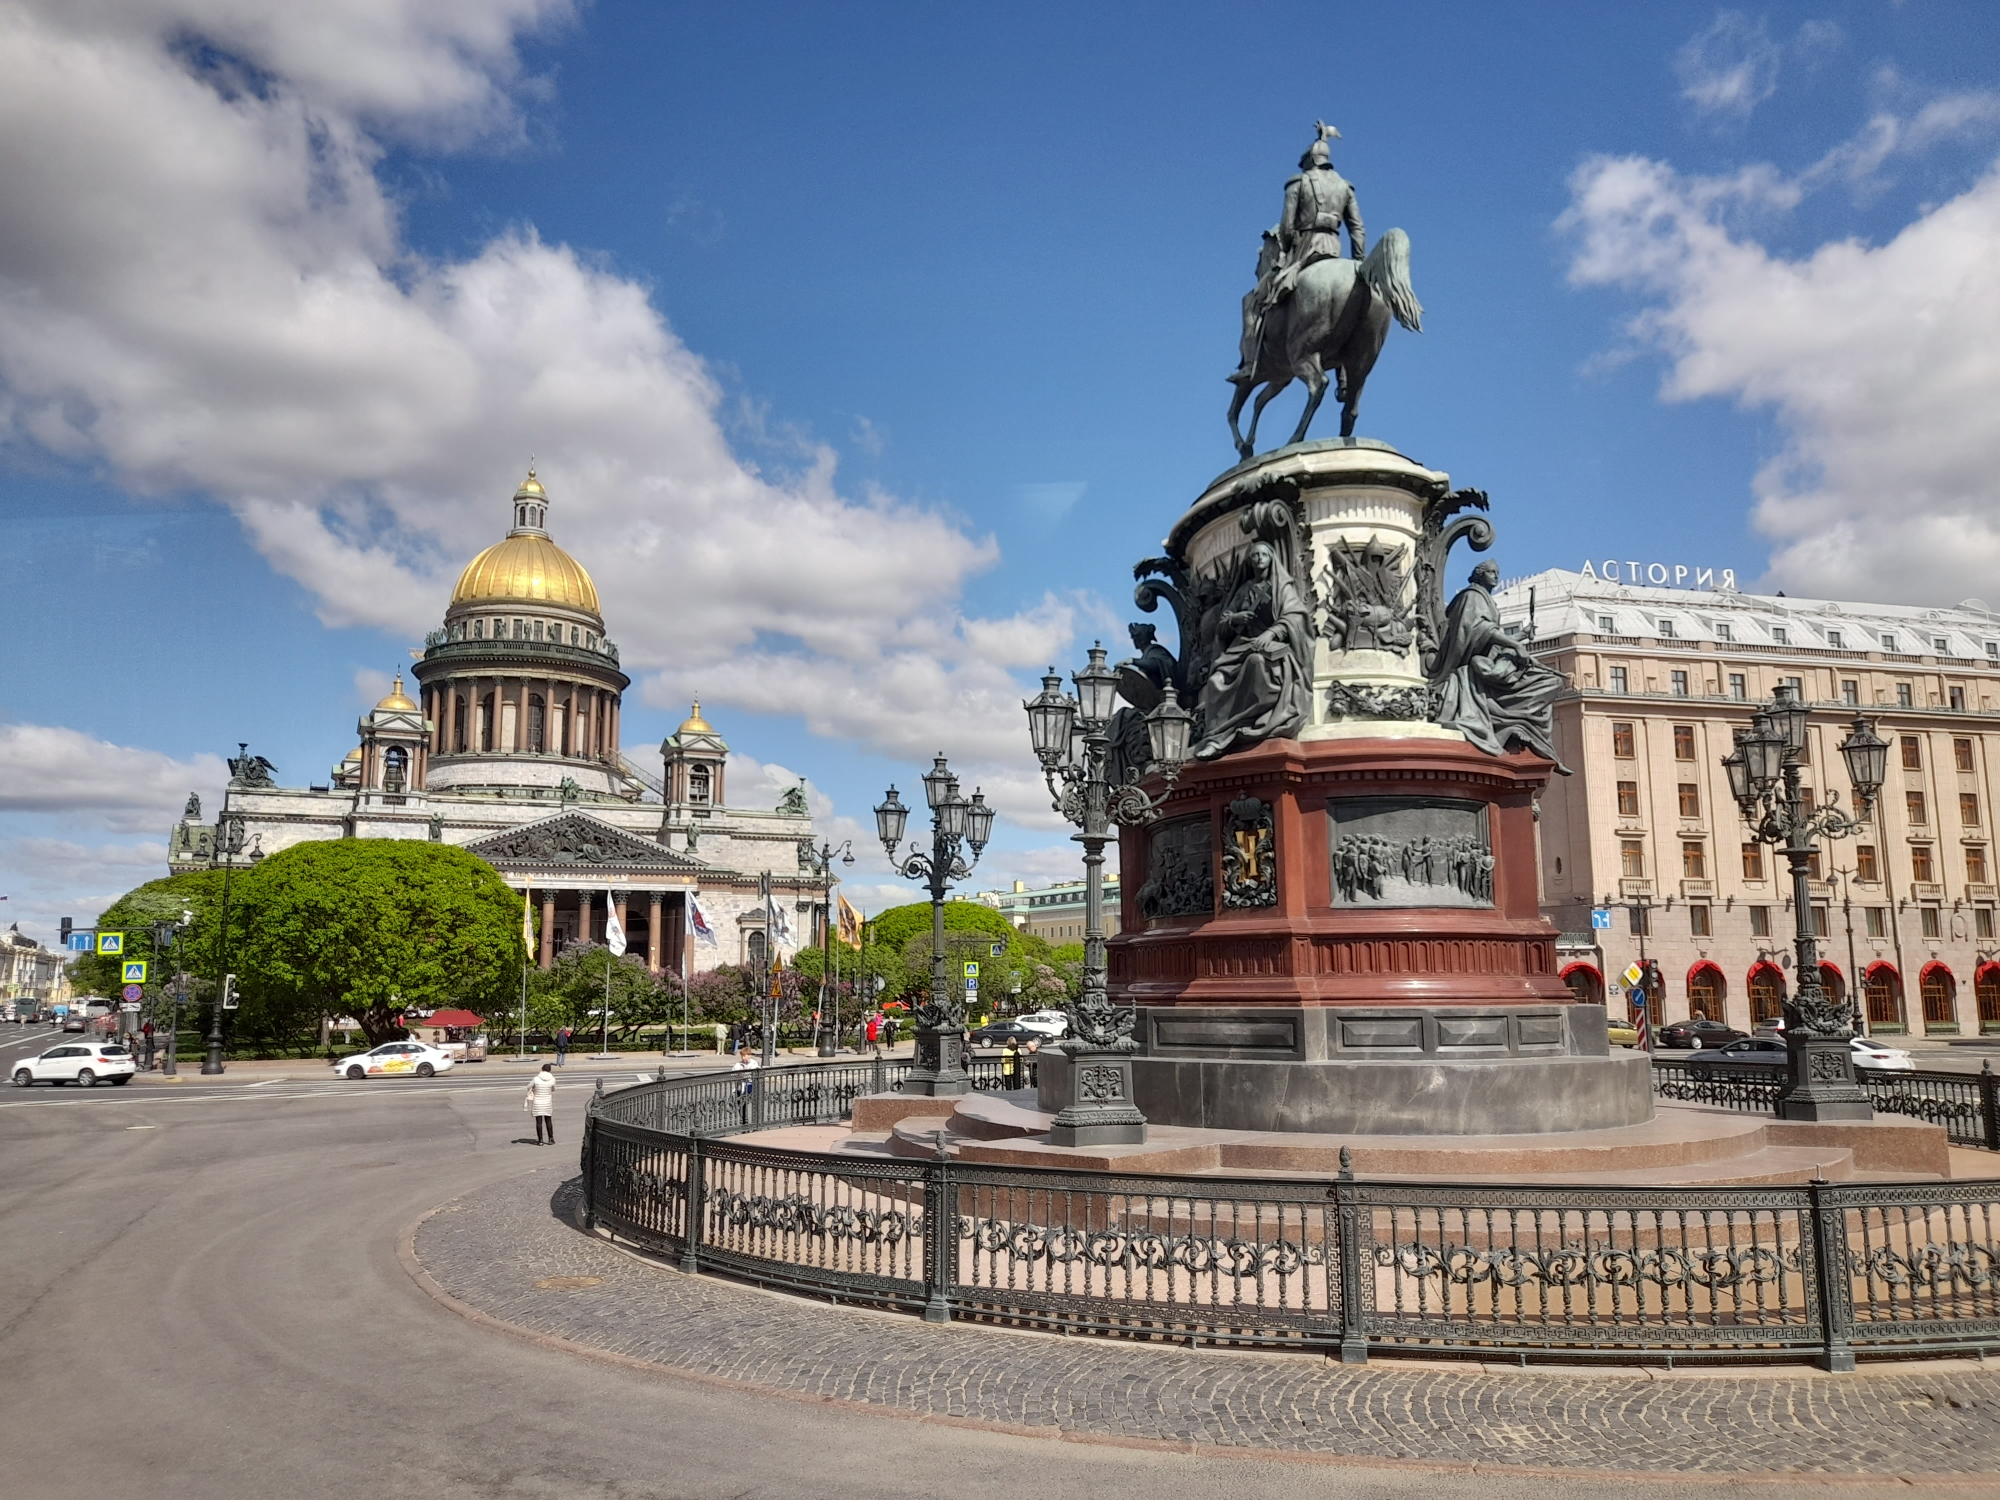 Цифровой гид для семей, путешествующих с детьми, появился на официальном туристическом портале Visit Petersburg